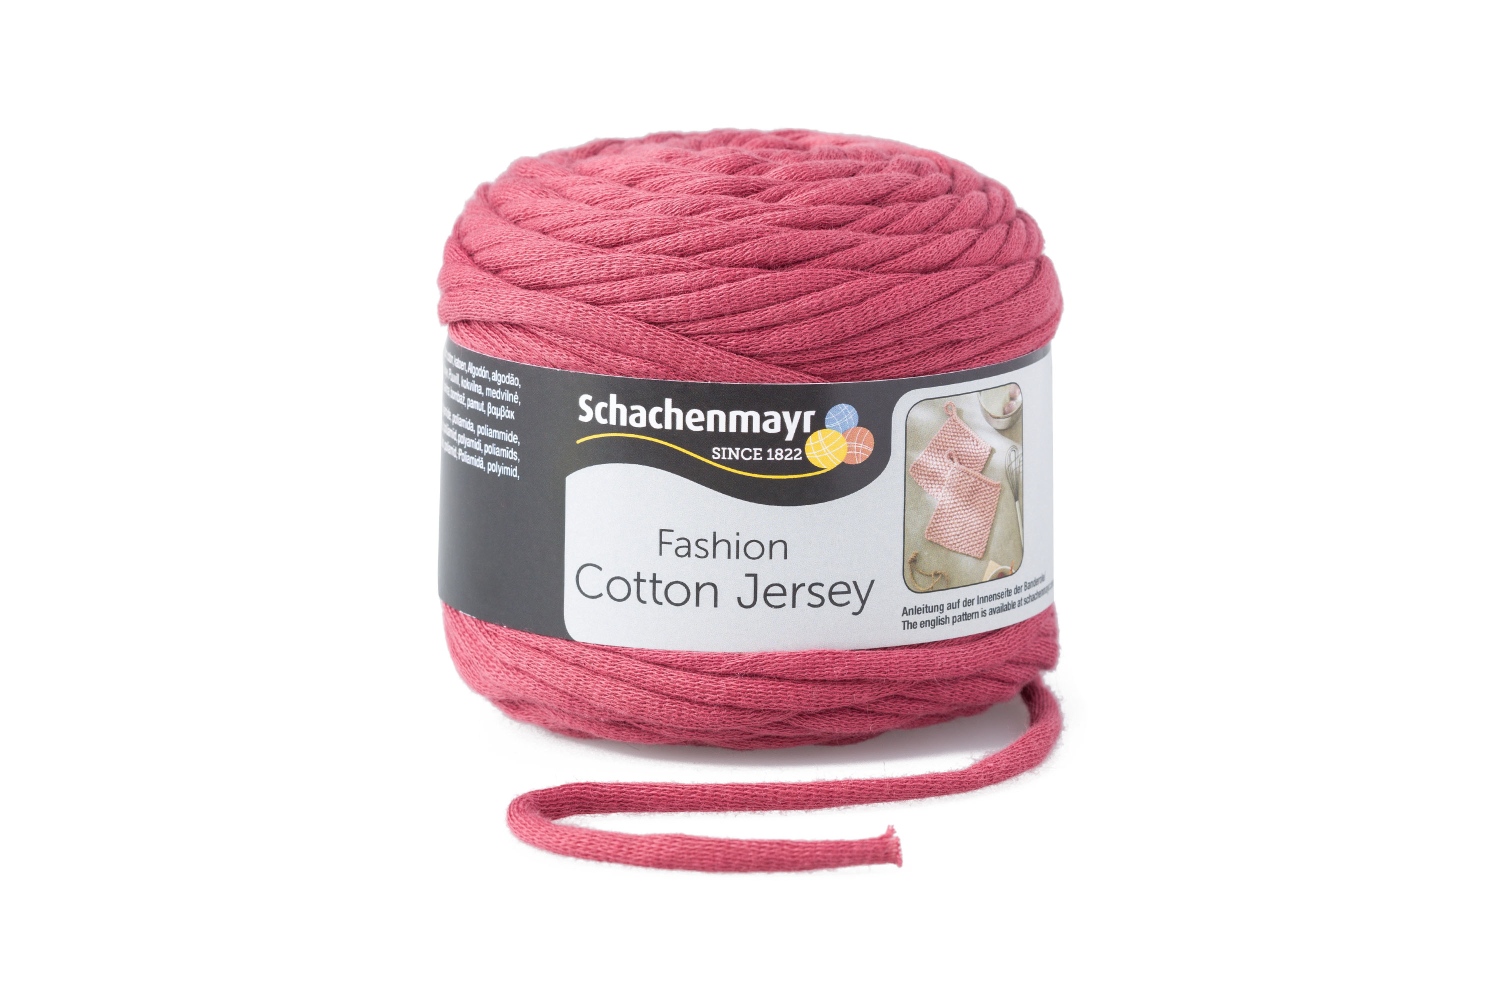 Duizeligheid serveerster Persoonlijk SMC Cotton Jersey 100g, Wolle, Wollgarn, Schlauchgarn, Homedeko Wolle